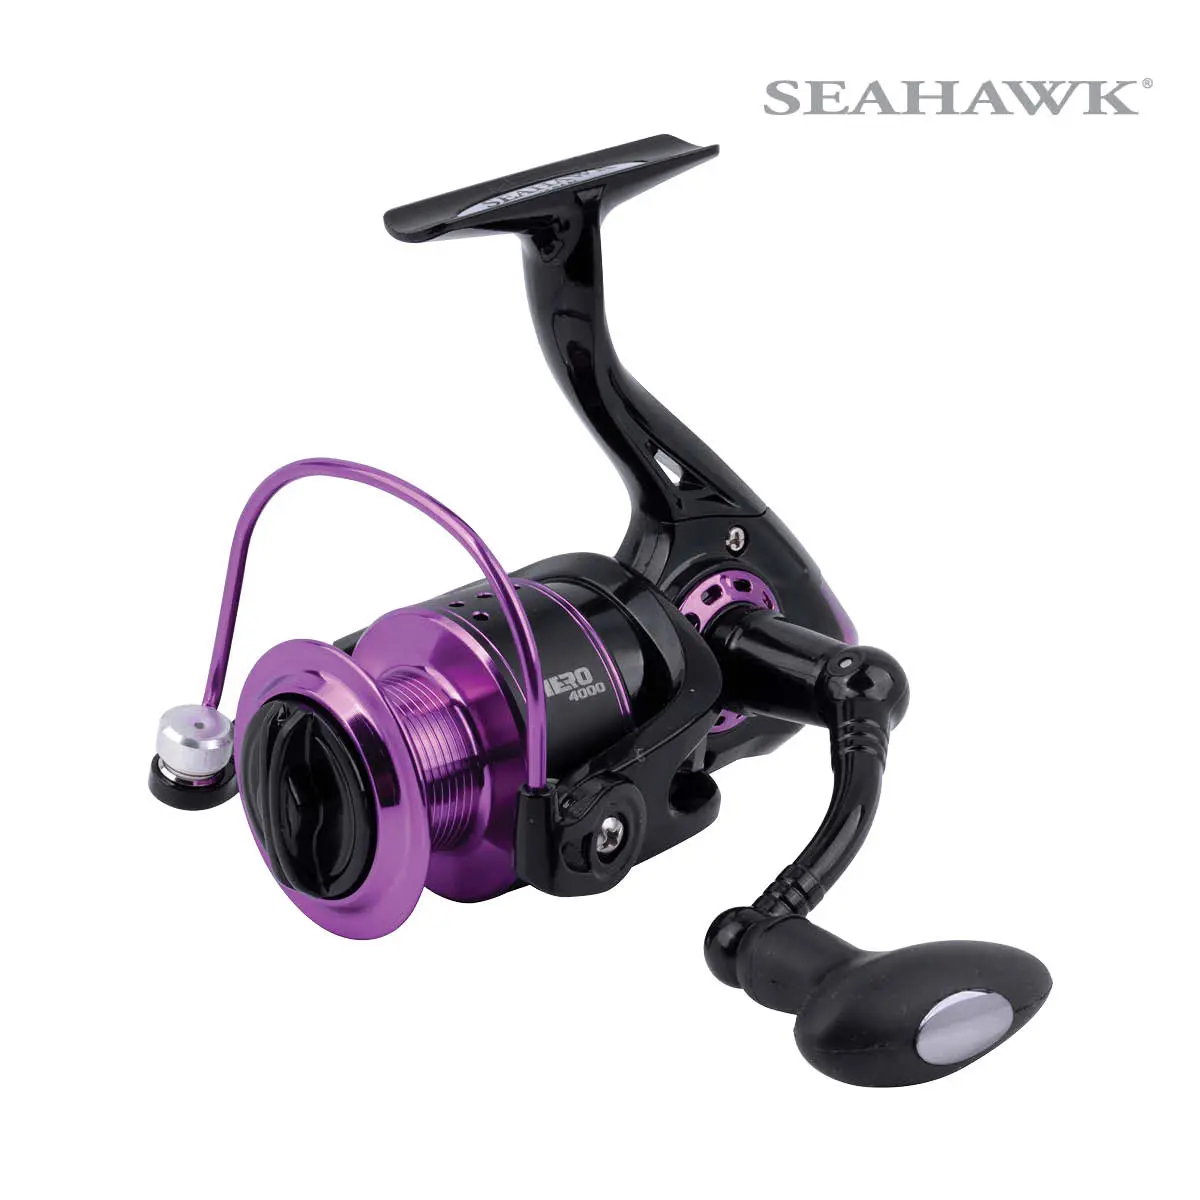 Seahawk Hero  Versatile Spinning Reel